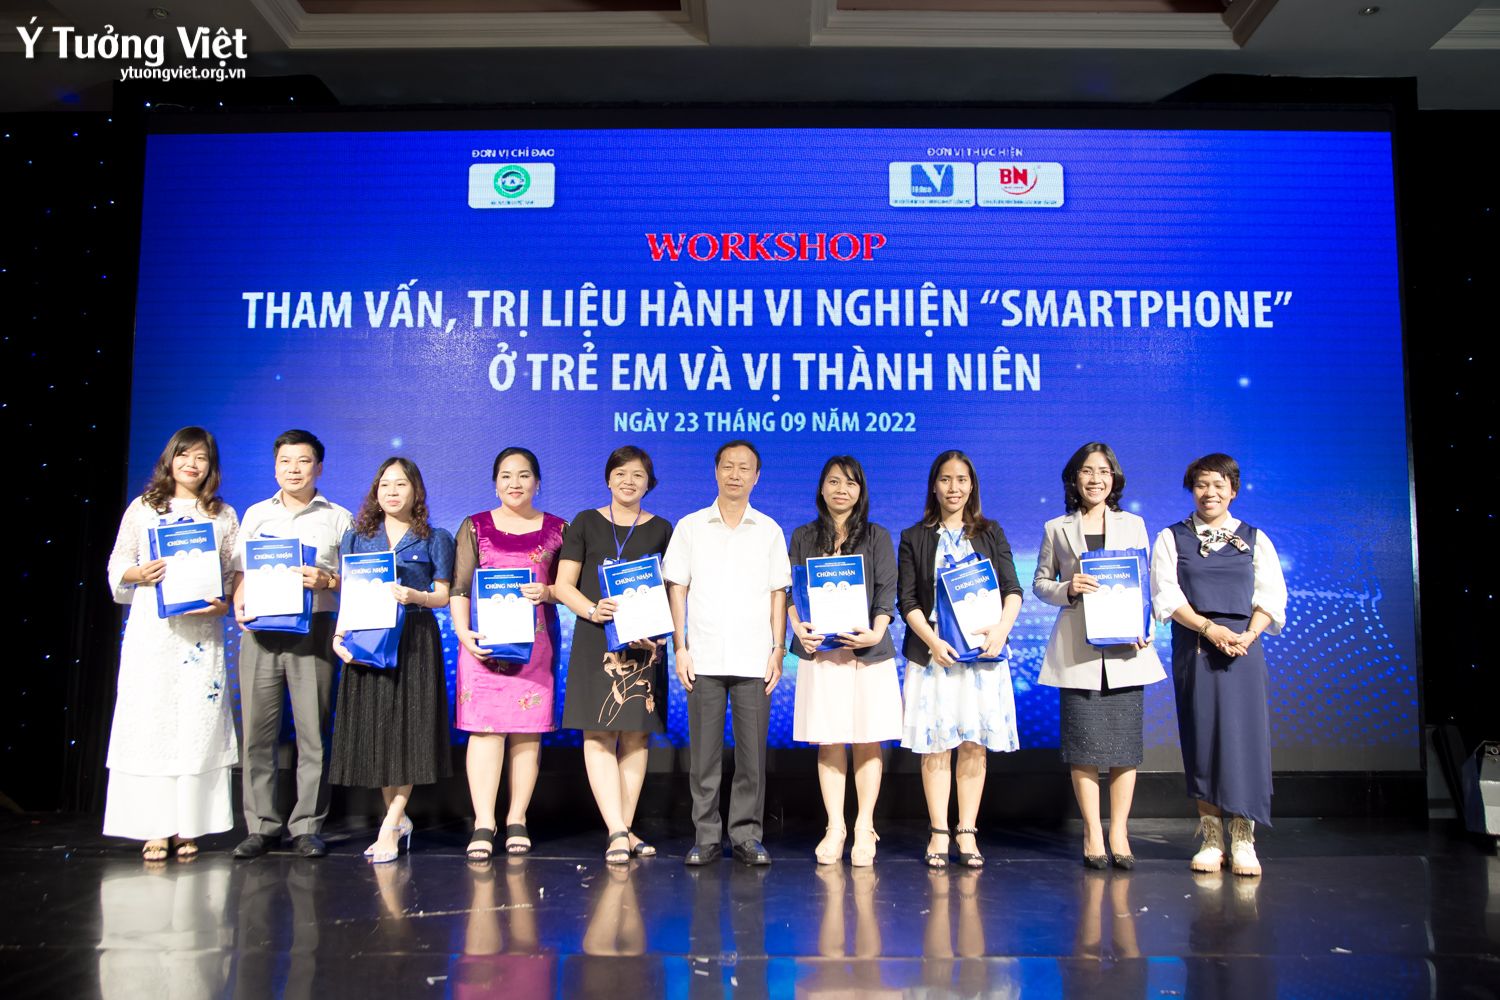 Workshop Tham Vấn, Trị Liệu Hành Vi Nghiện Smartphone ở Trẻ Em Và Vị Thành Niên Những Hình ảnh Thật đáng Nhớ 28